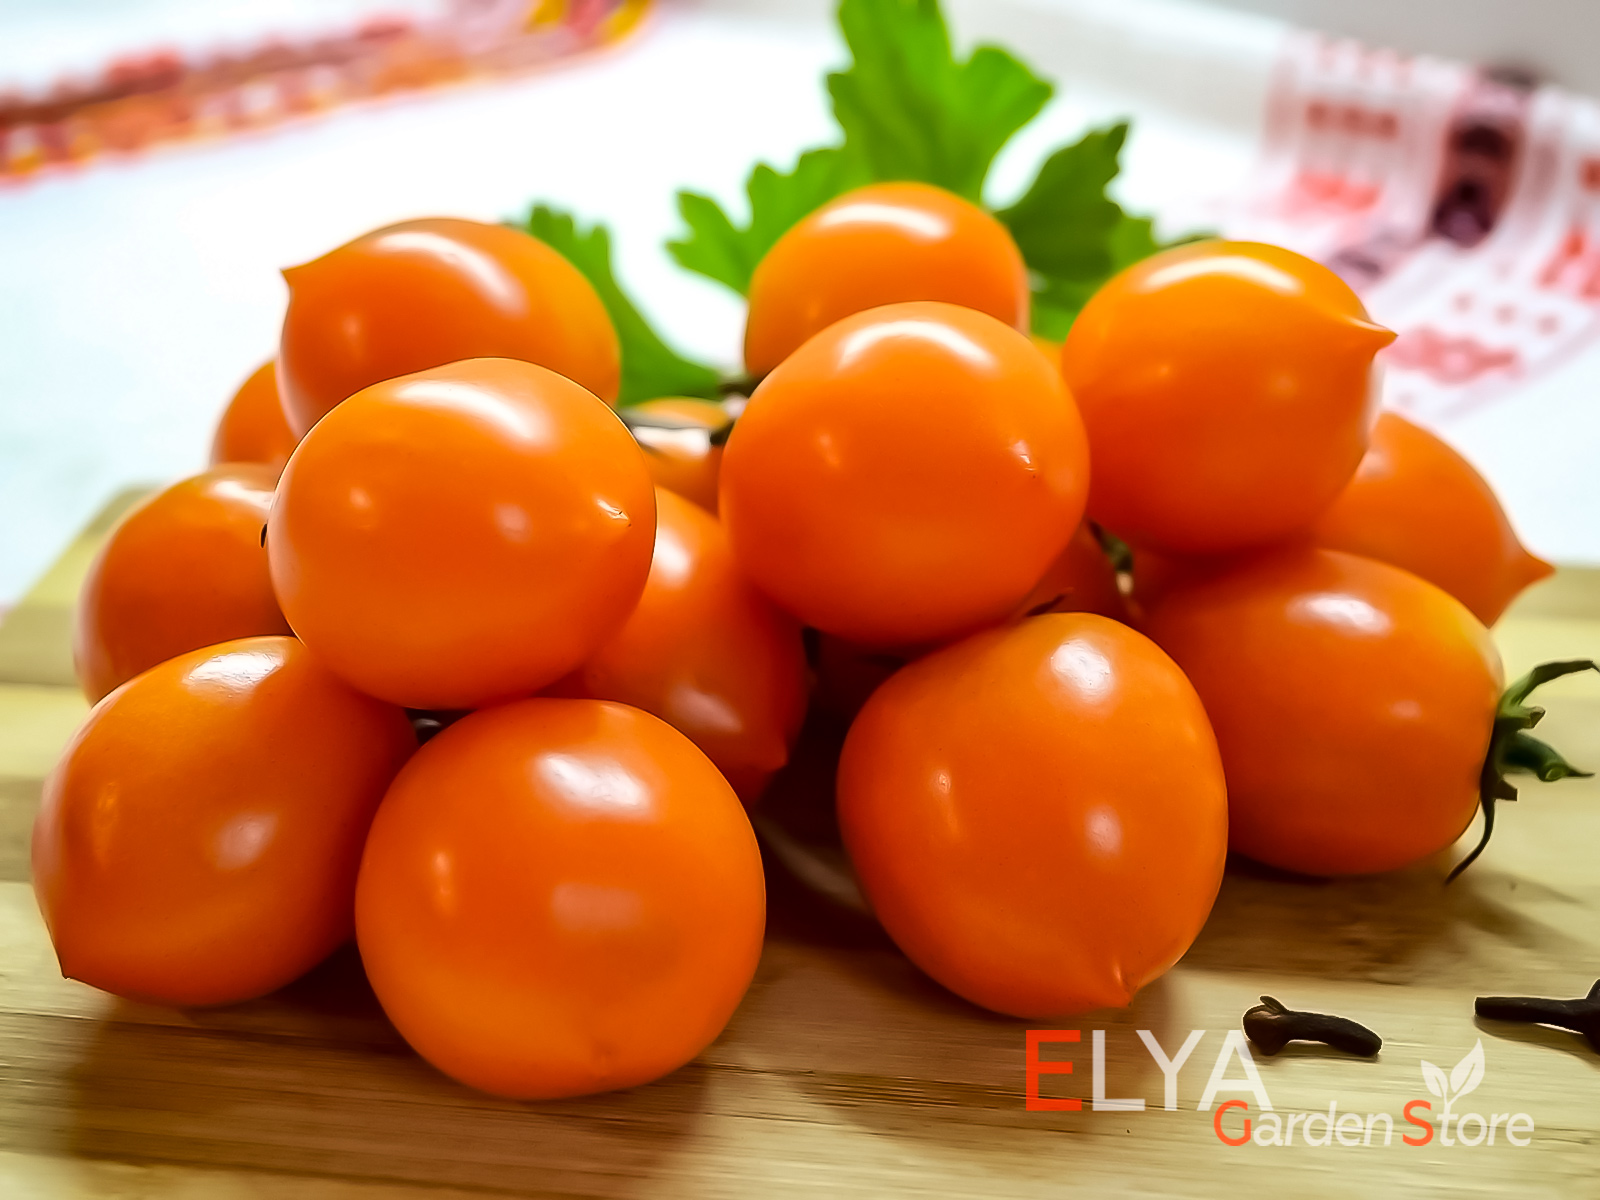 Коллекционный сорт томата Пендулина Оранж - яркий и урожайный - фото магазина семян Elya Garden